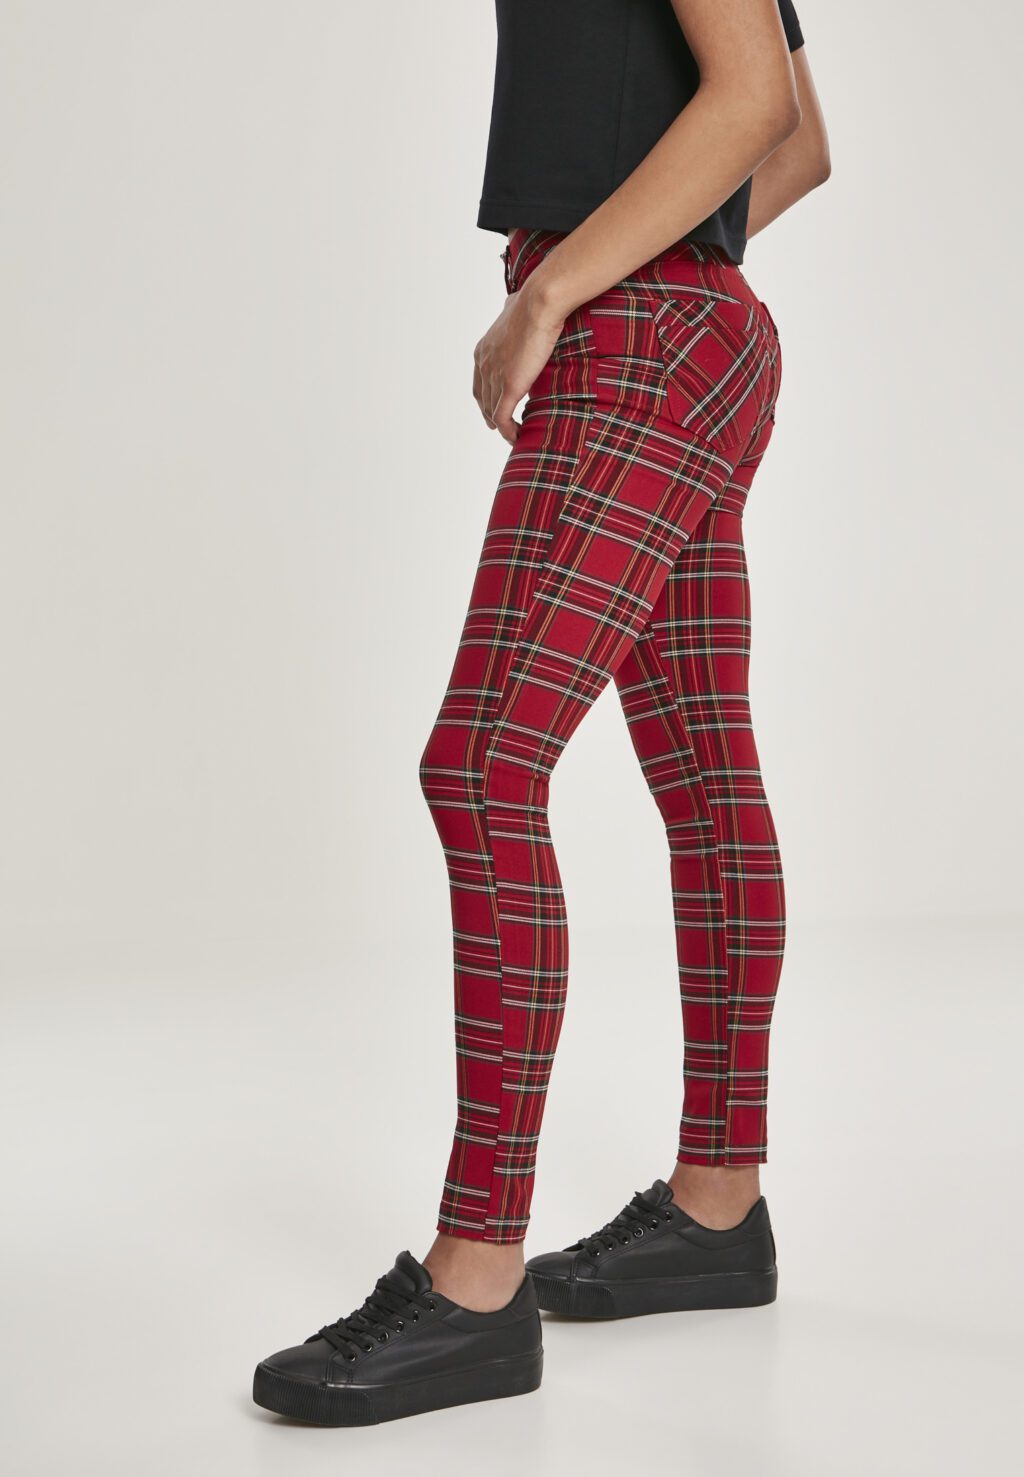 Urban Classics Ladies Skinny Tartan Pants red/blk TB2848